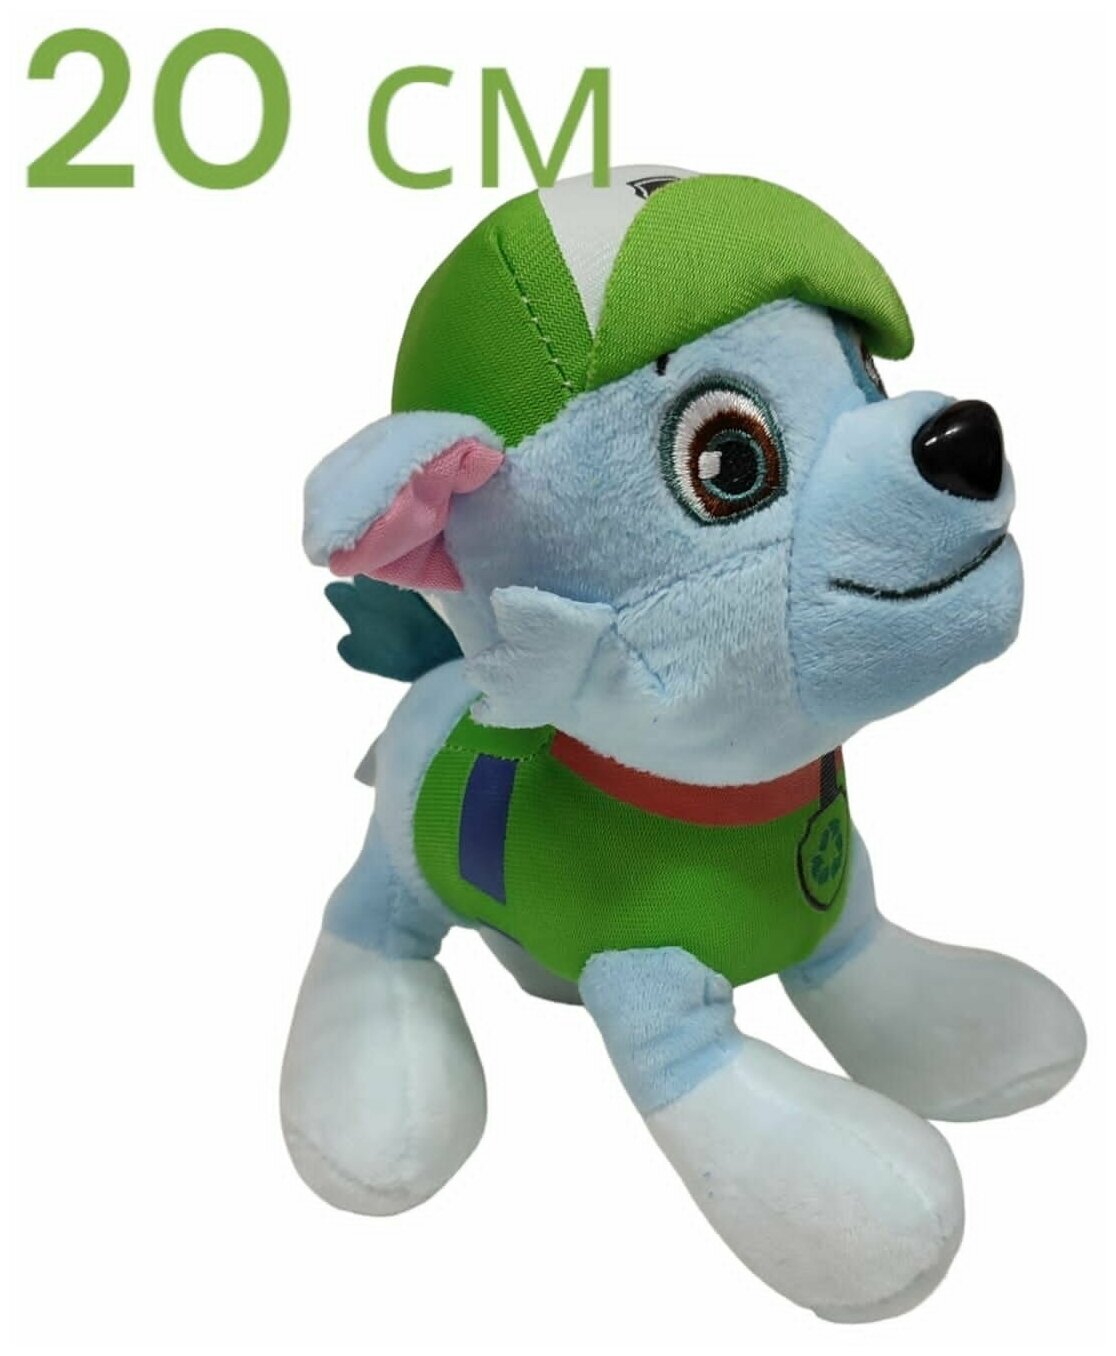 Мягкая игрушка зелёный щенок Рокки. 20 см. Плюшевый популярный герой Щенячий патруль.